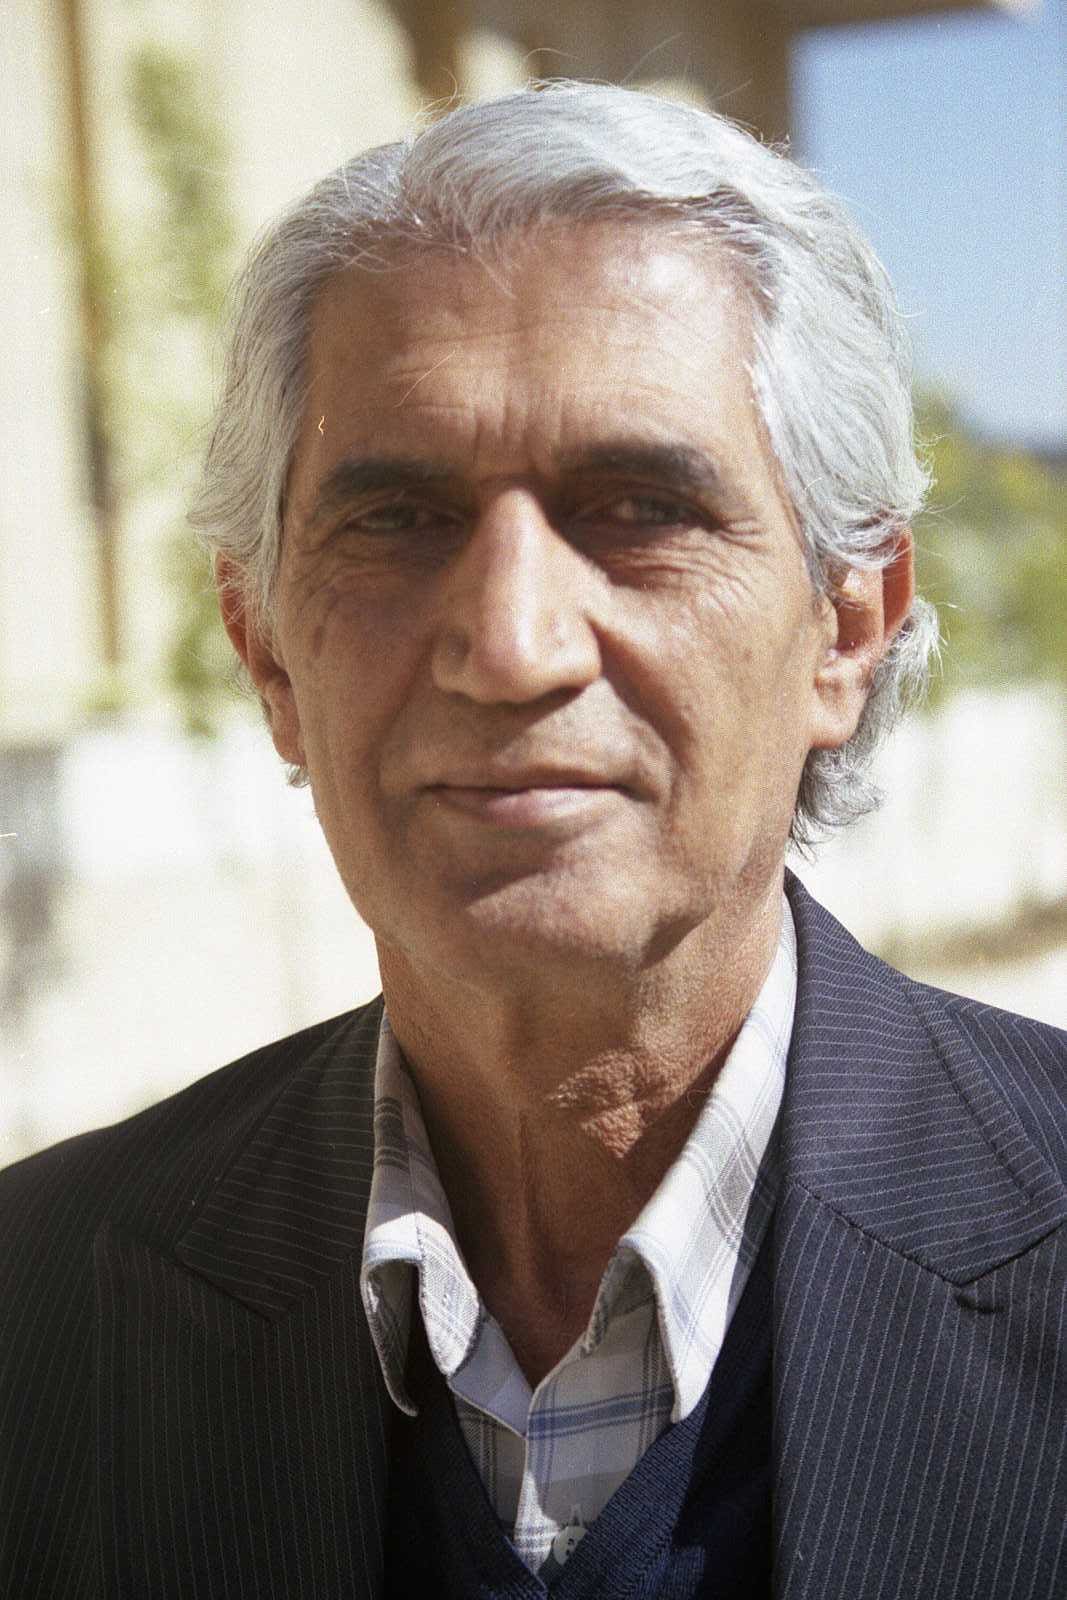 Ali Naghash Zade